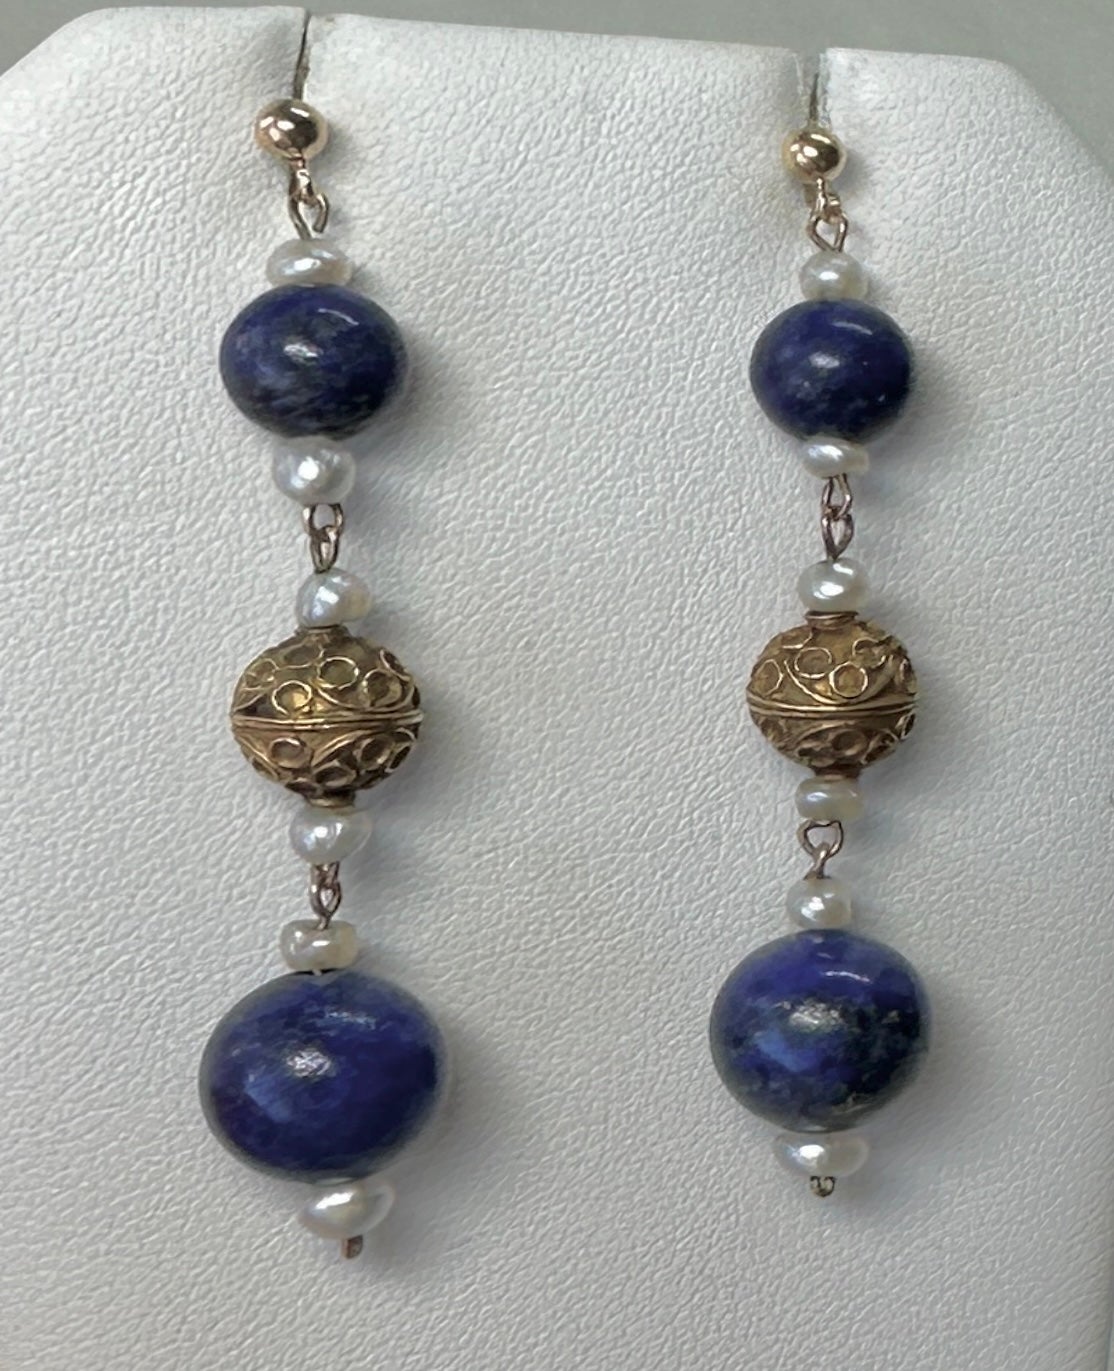 Dies ist ein spektakuläres Paar von antiken Etruscan Revival Anhänger Tropfen Ohrringe mit 18 Karat etruskischen Gold Perlen, Lapis Lazuli Perlen und Perlen.  Die Ohrringe haben eine außergewöhnliche frühetruskische Perlenschnörkel- und